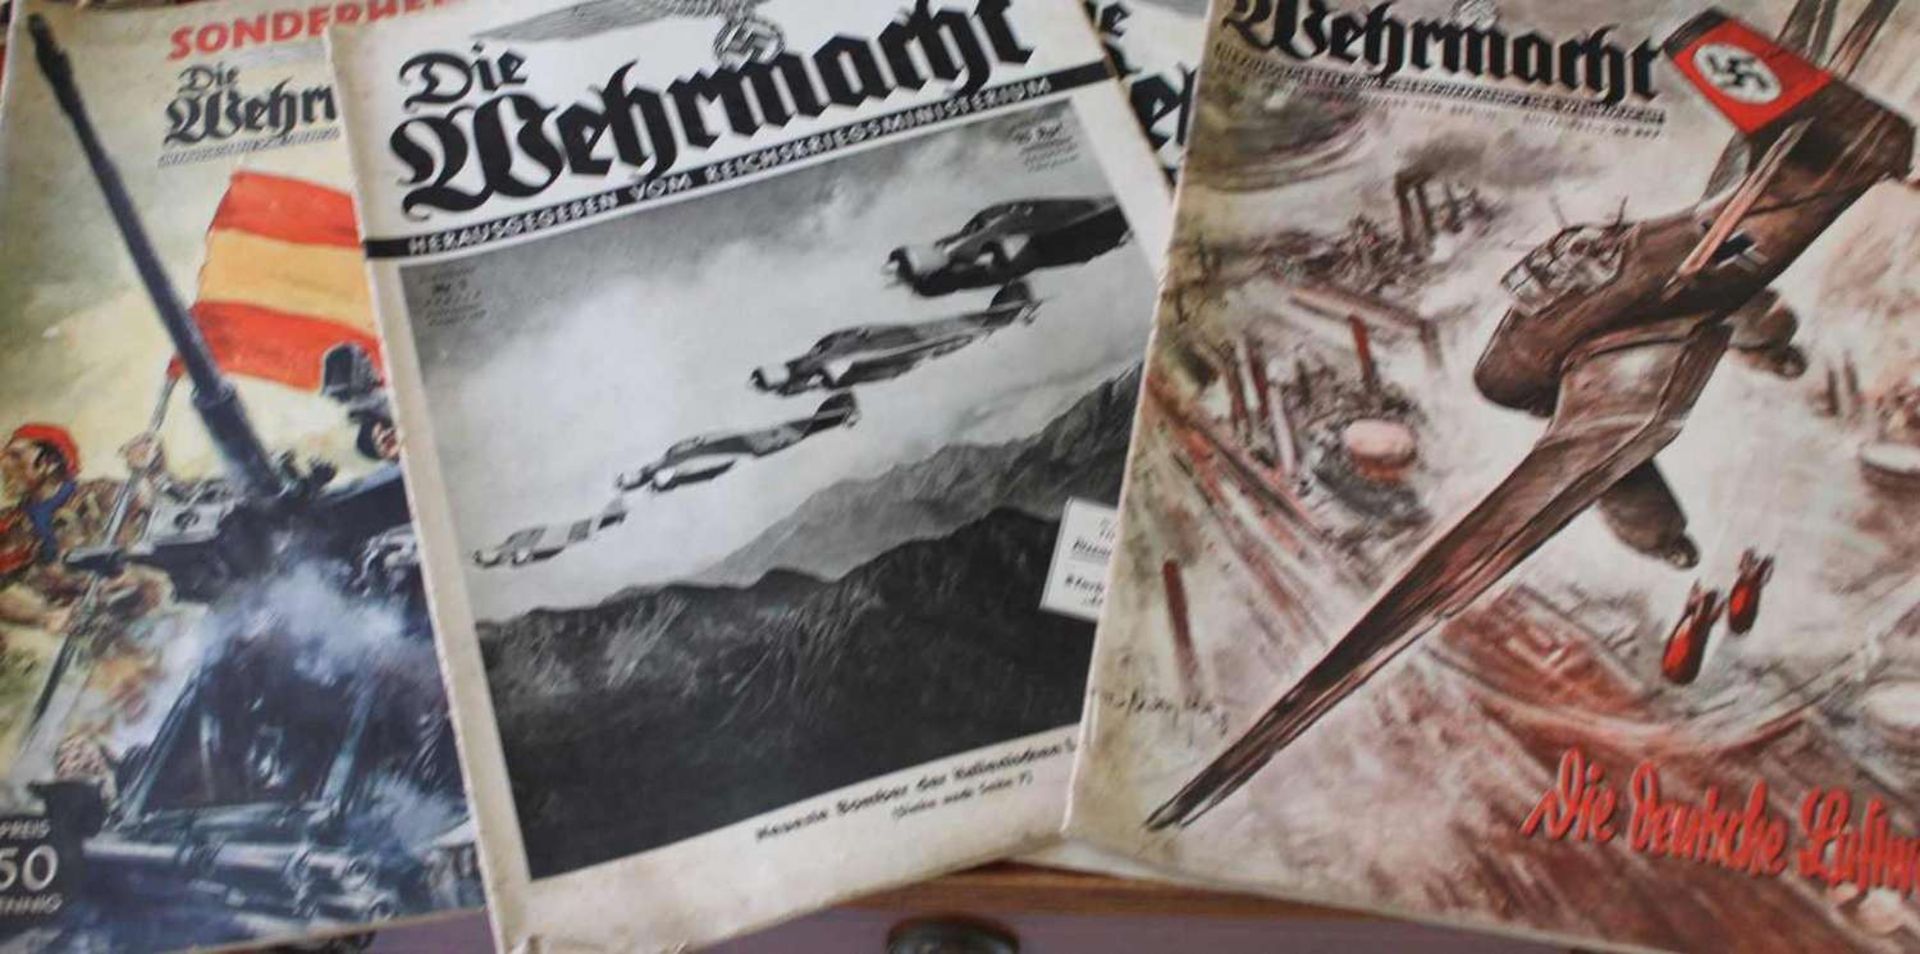 4 Hefte die Wehrmacht, dabei 1 Sonderheft "Wir kämpfen in Spanien" 4 issues "the Wehrmacht" , with 1